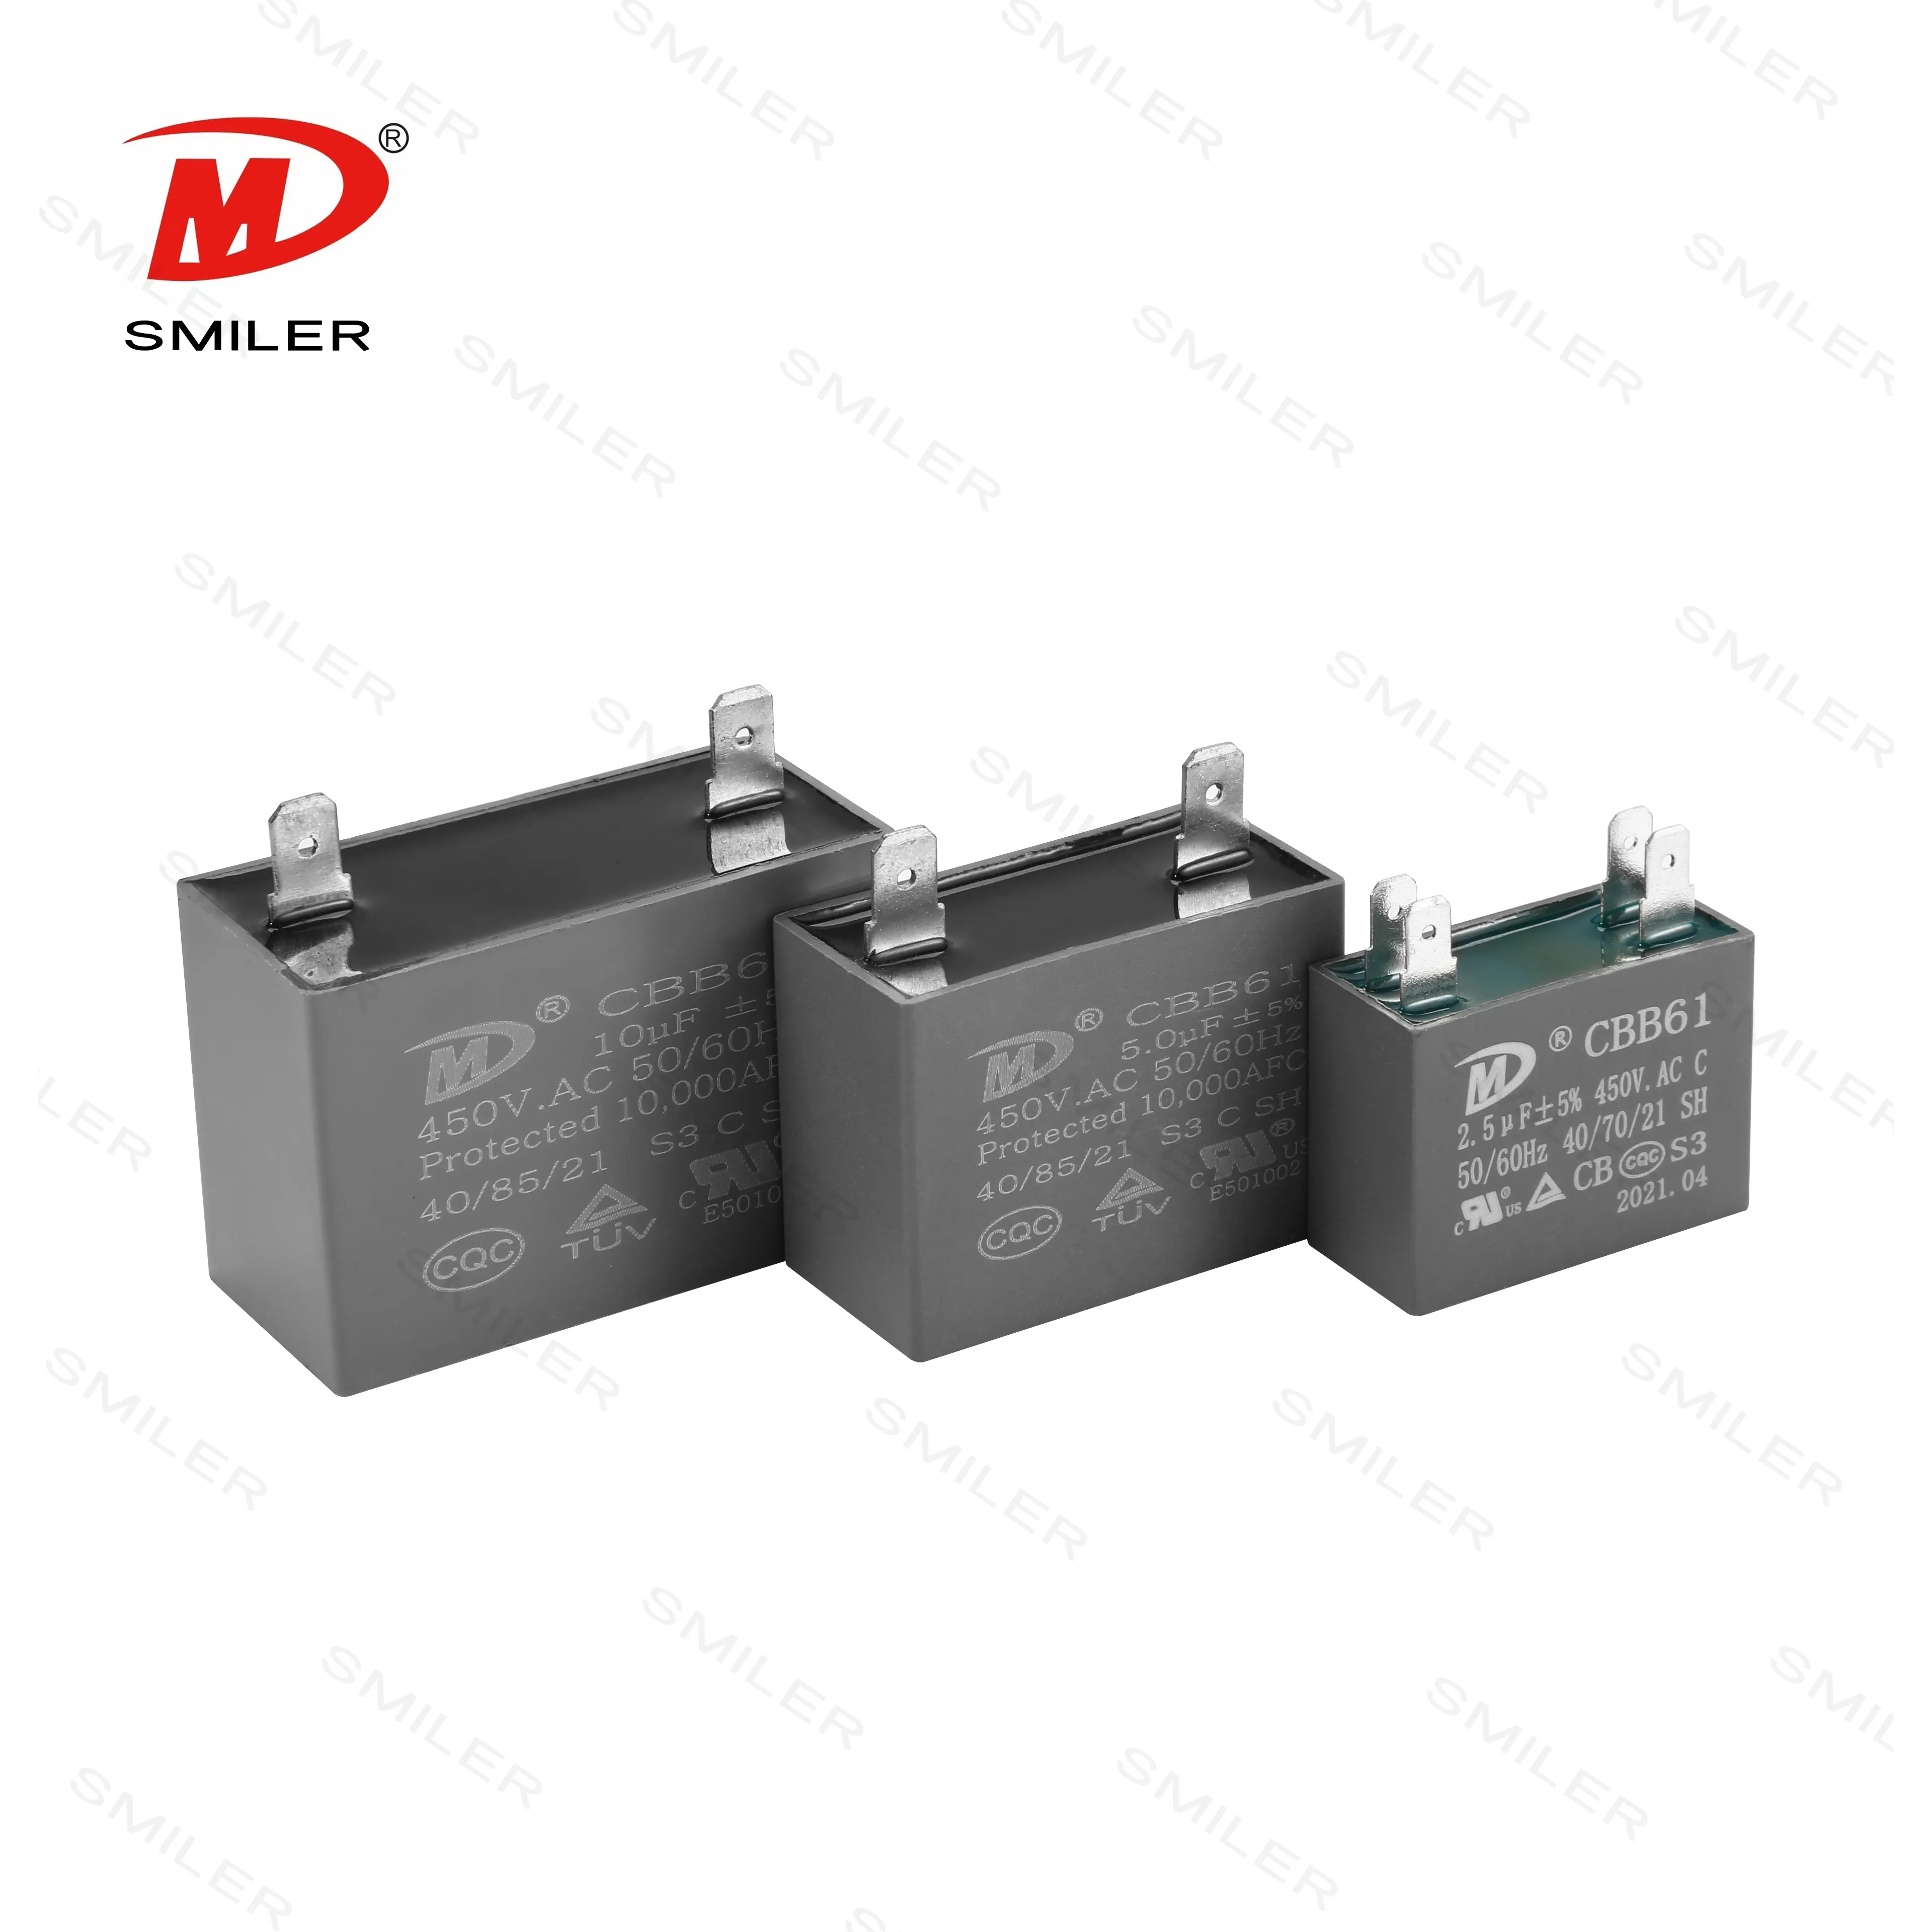 Capacitadores kondensator cbb61 p2 com smiler terminal